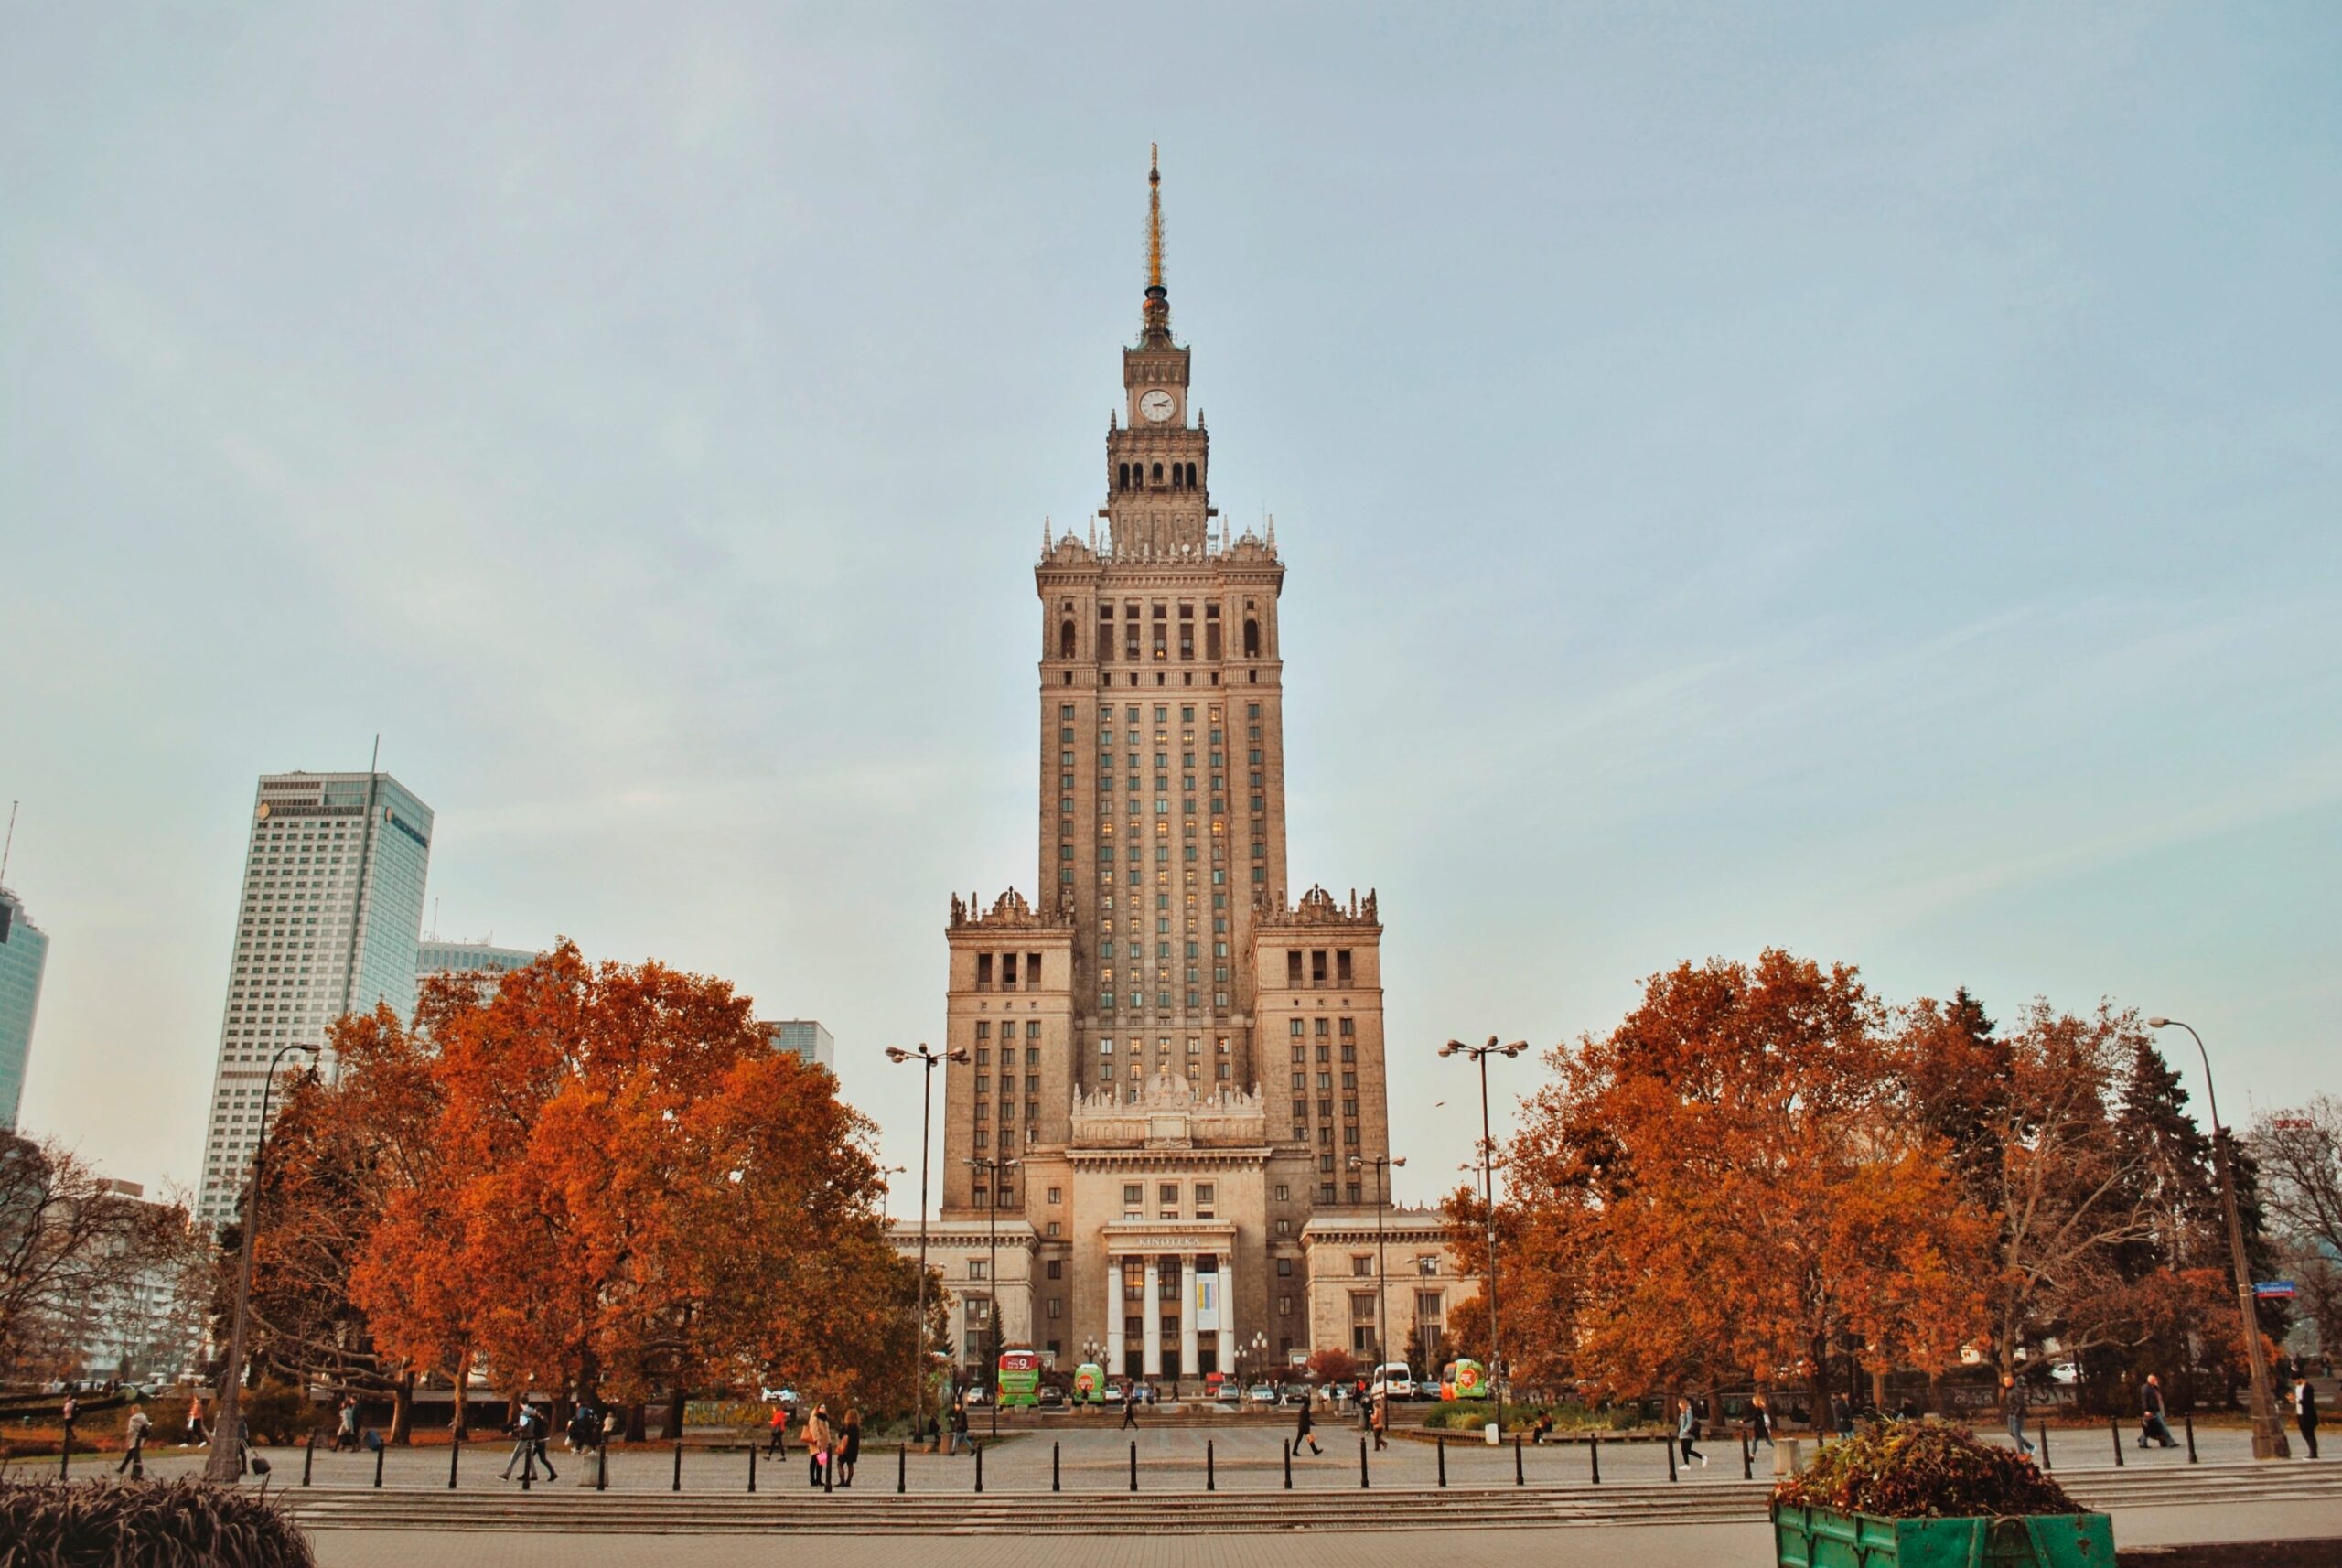 Centrum, Warsaw, Poland